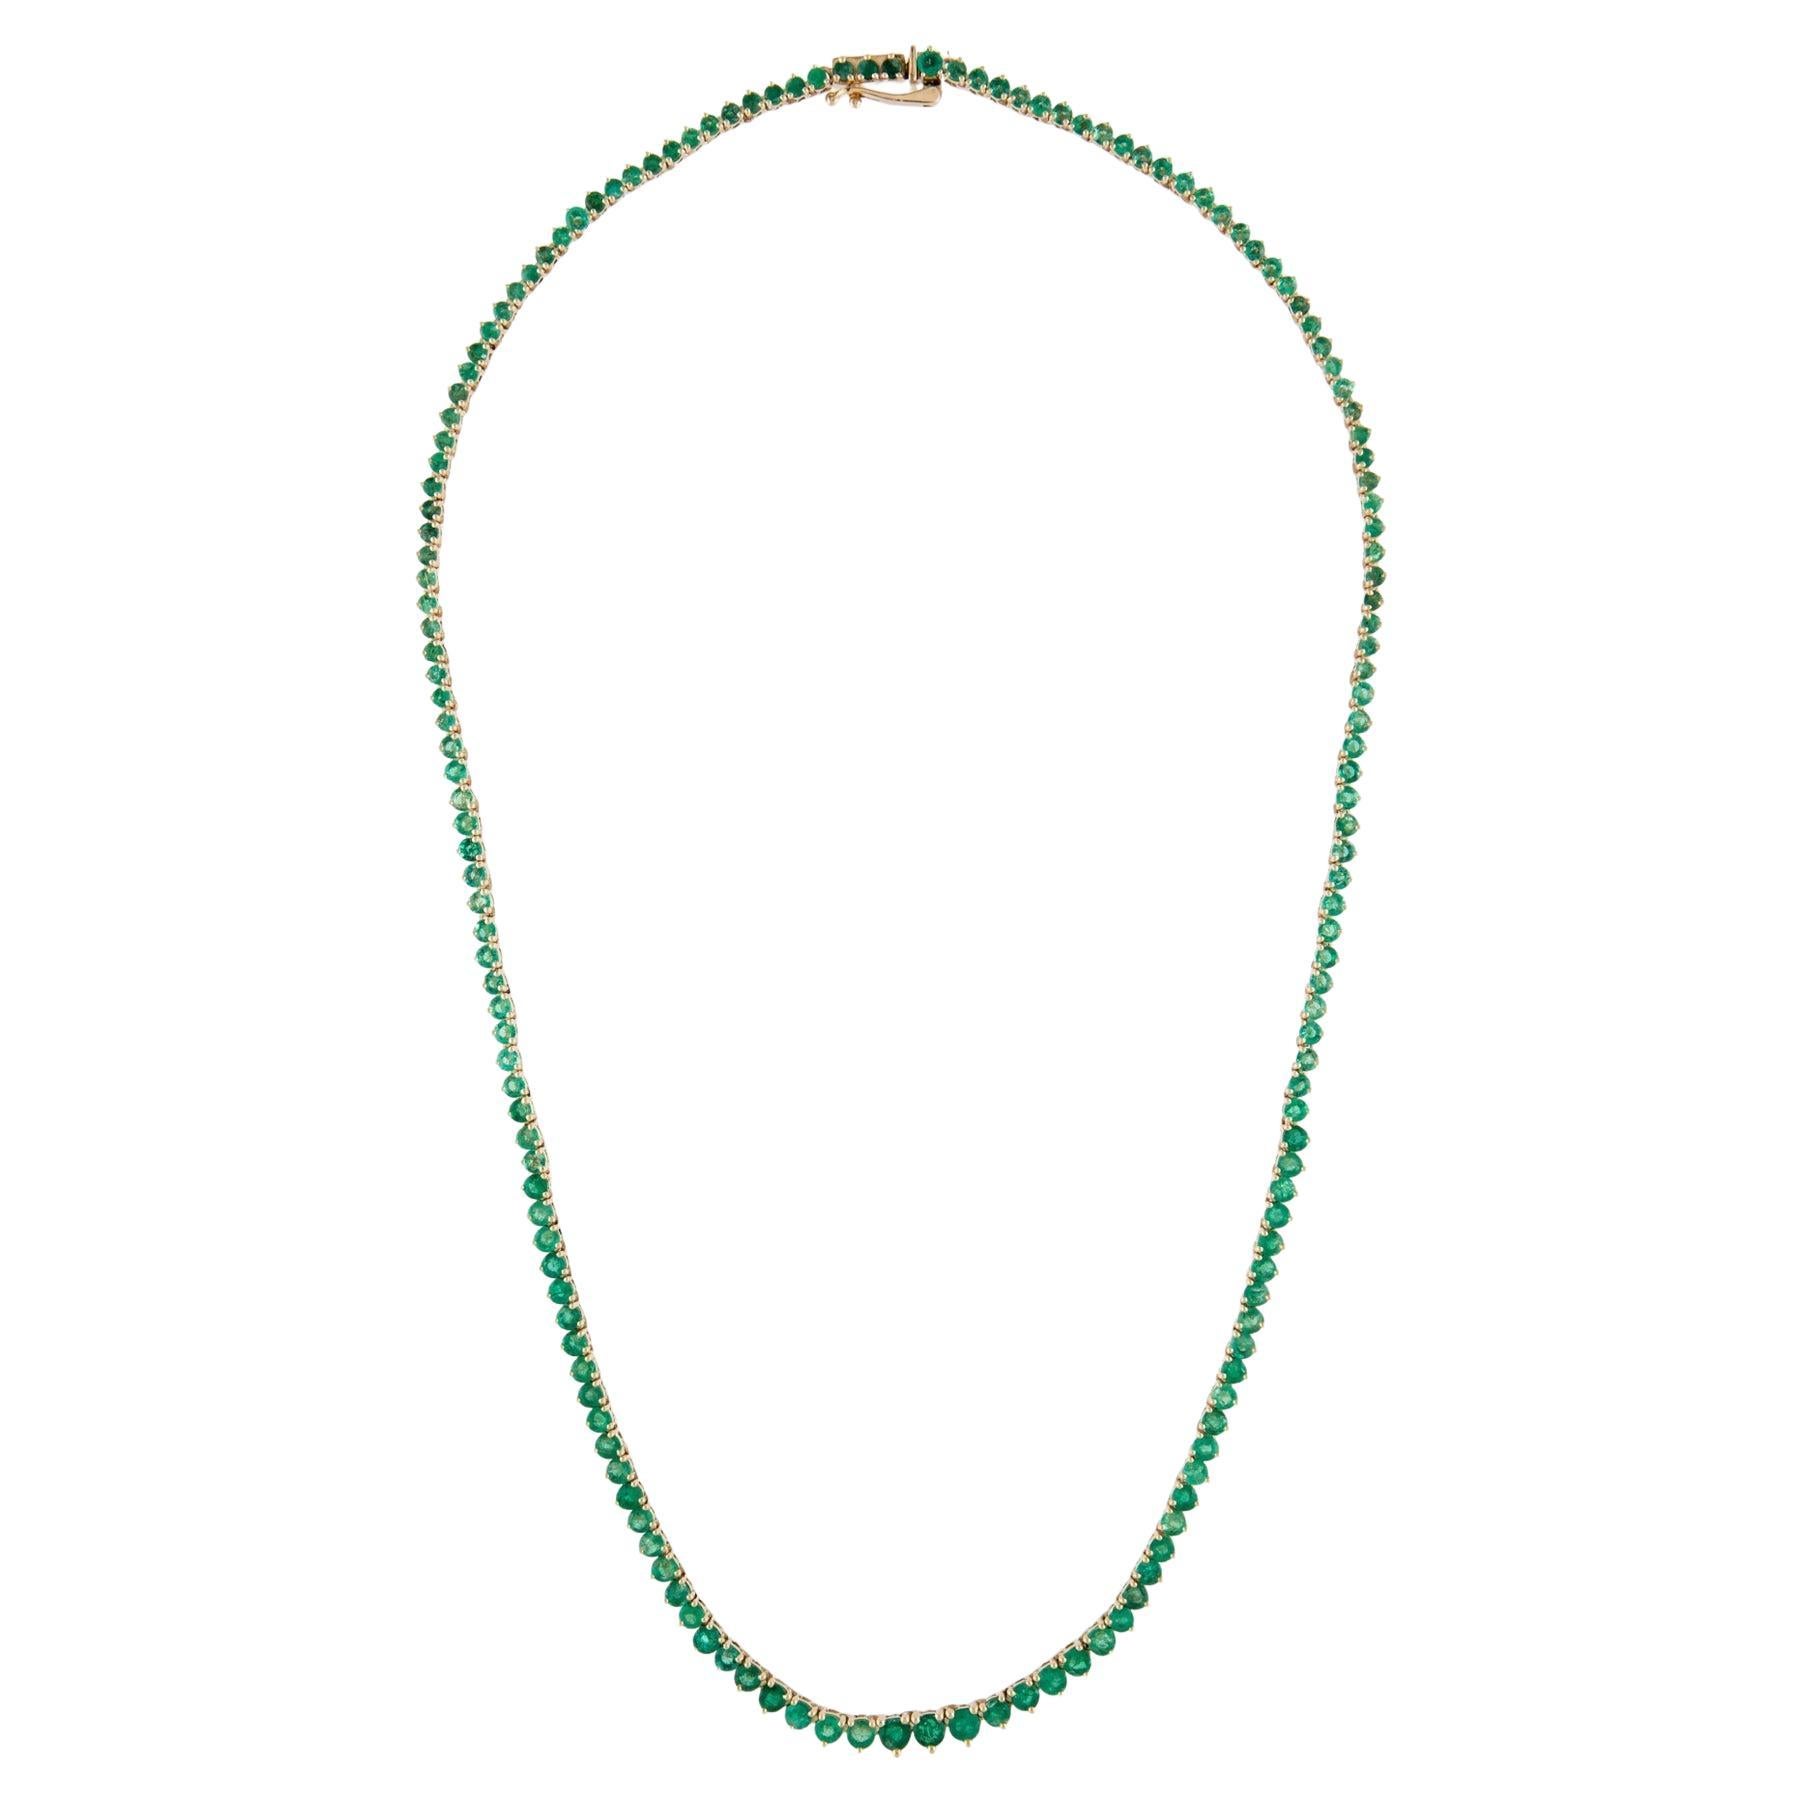 14K Smaragd abgestufte Halskette: Exquisite Luxus-Statement-Schmuckstück